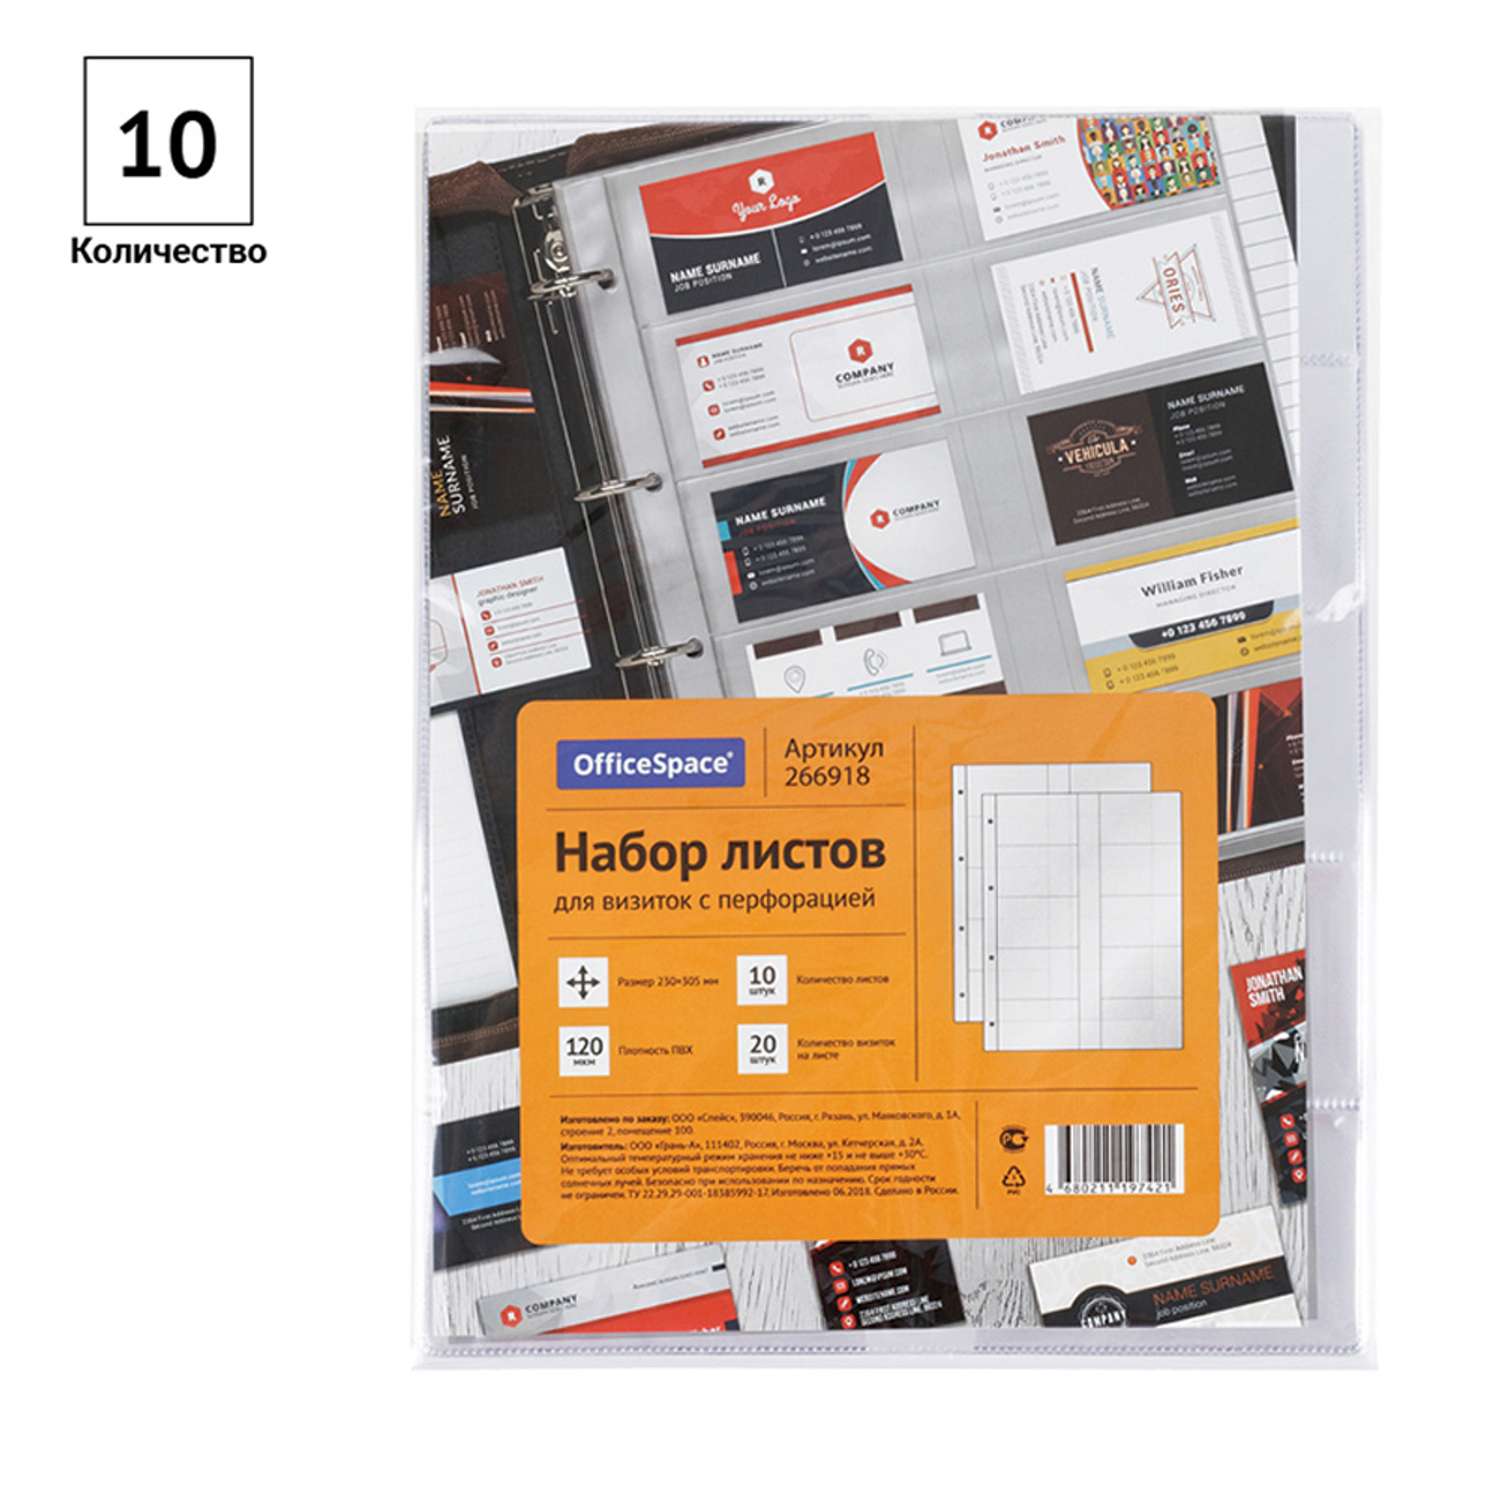 Набор листов OfficeSpace на 20 визиток с перфорацией 10шт - фото 2